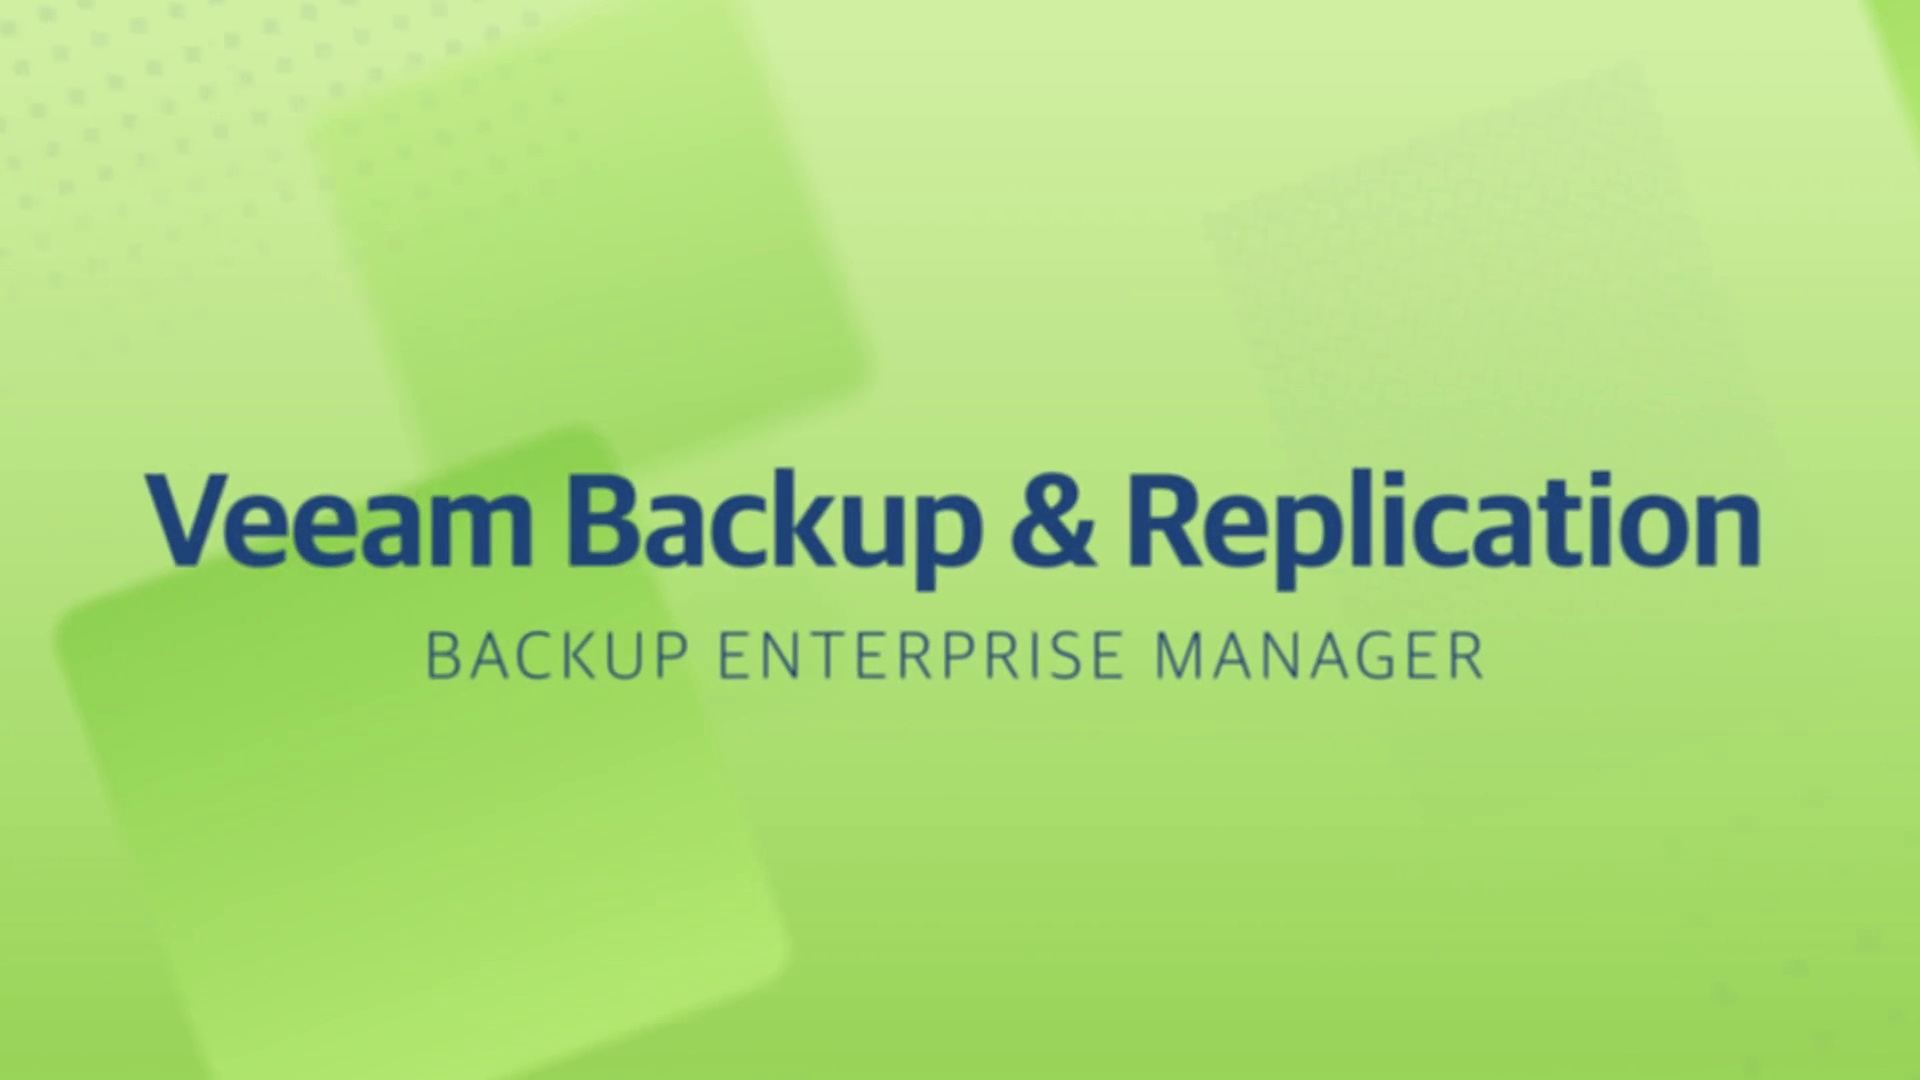 Product launch v11 - VBR - Backup Enterprise Manager